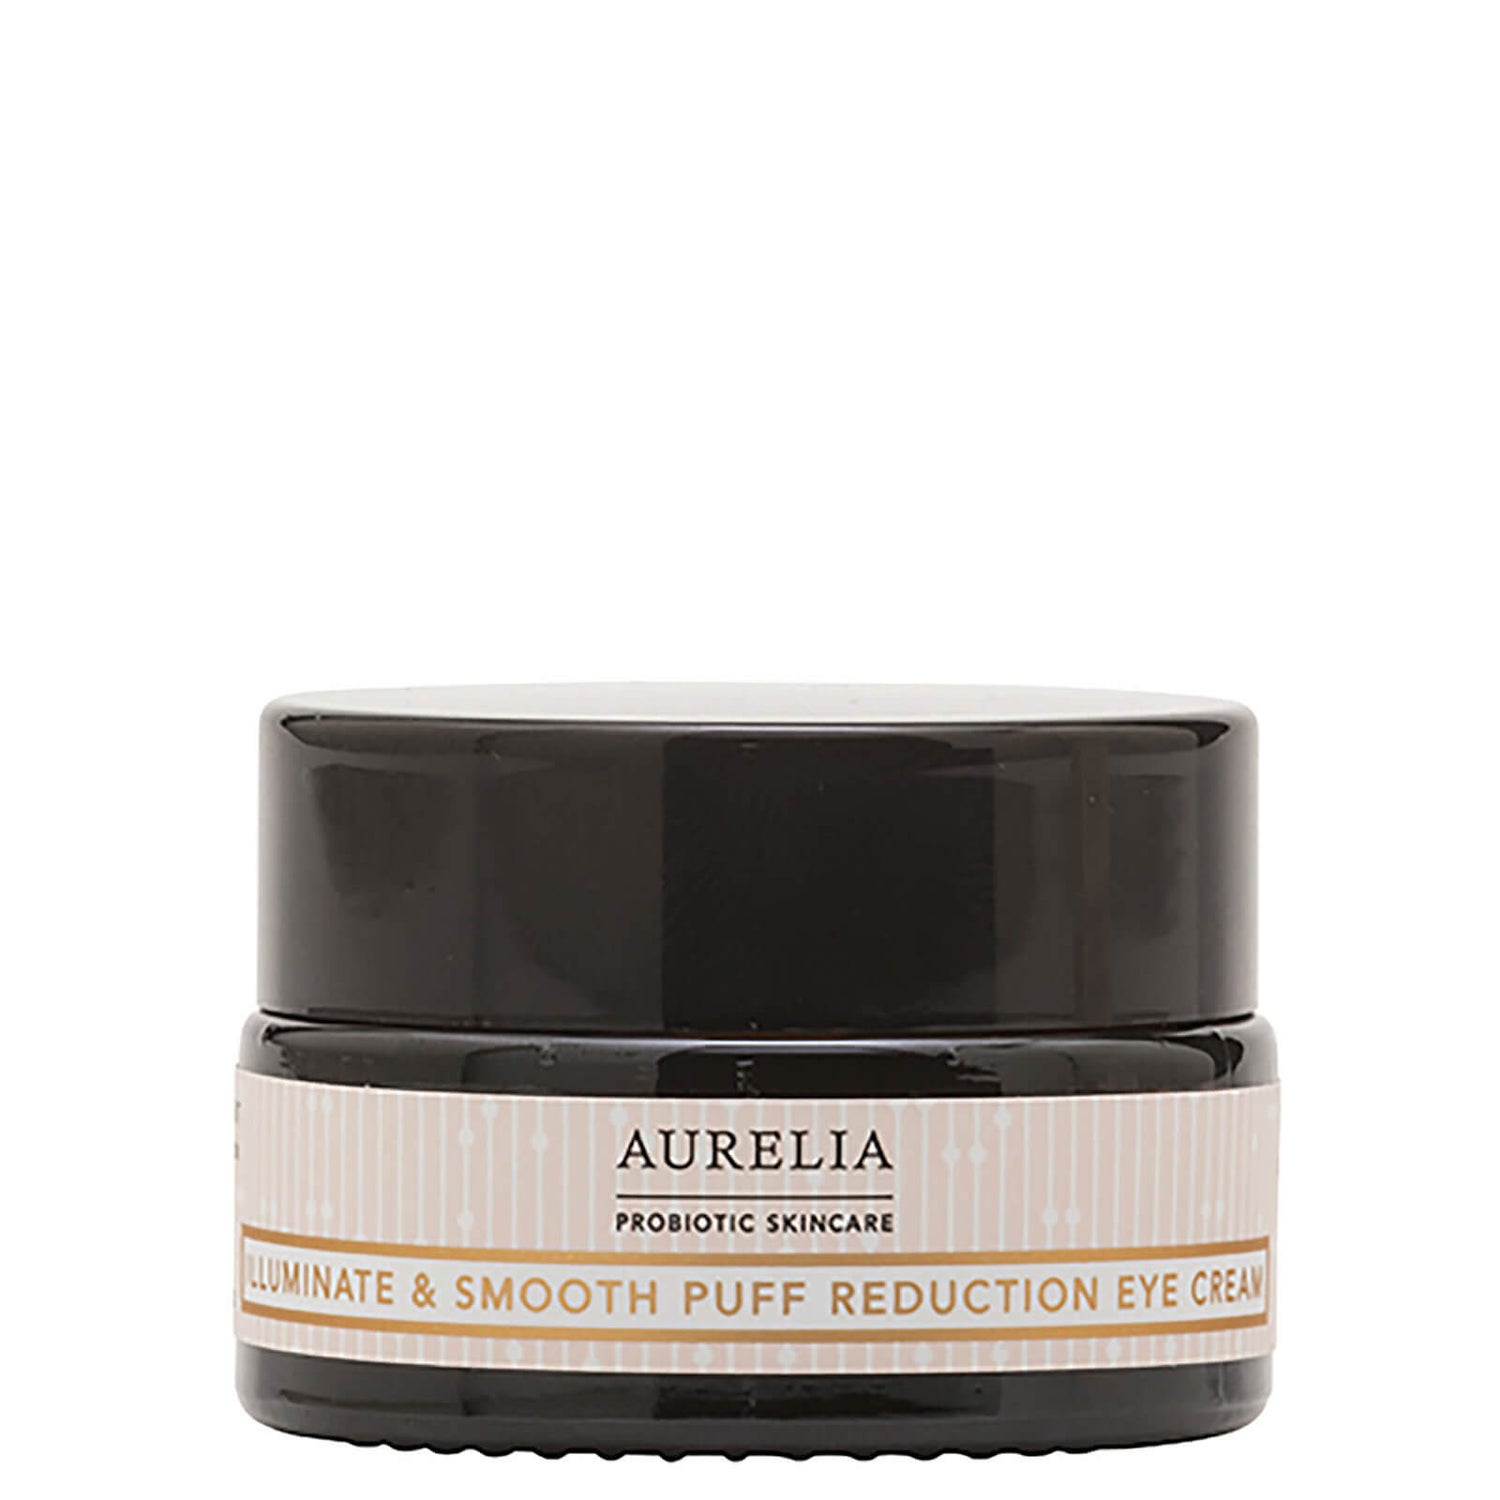 Aurelia Probiotic Skincare Illuminate and Smooth Puff Reduction Eye Cream 15ml